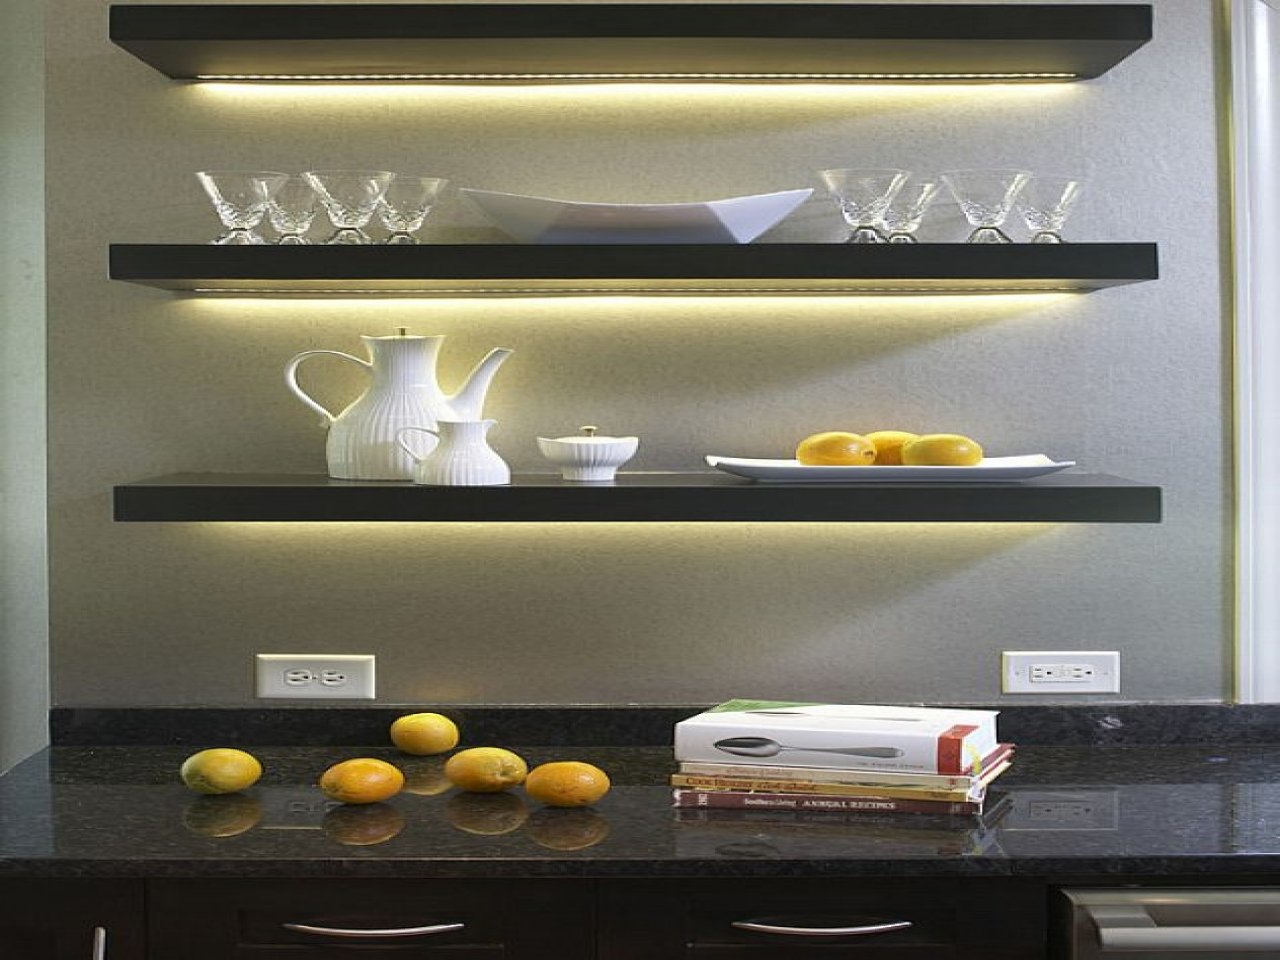 Подсветка для кухни под шкафы: какая лучше – линейная диодная или мебельные точечные светильники? как на кухне сделать монтаж ленты своими руками?